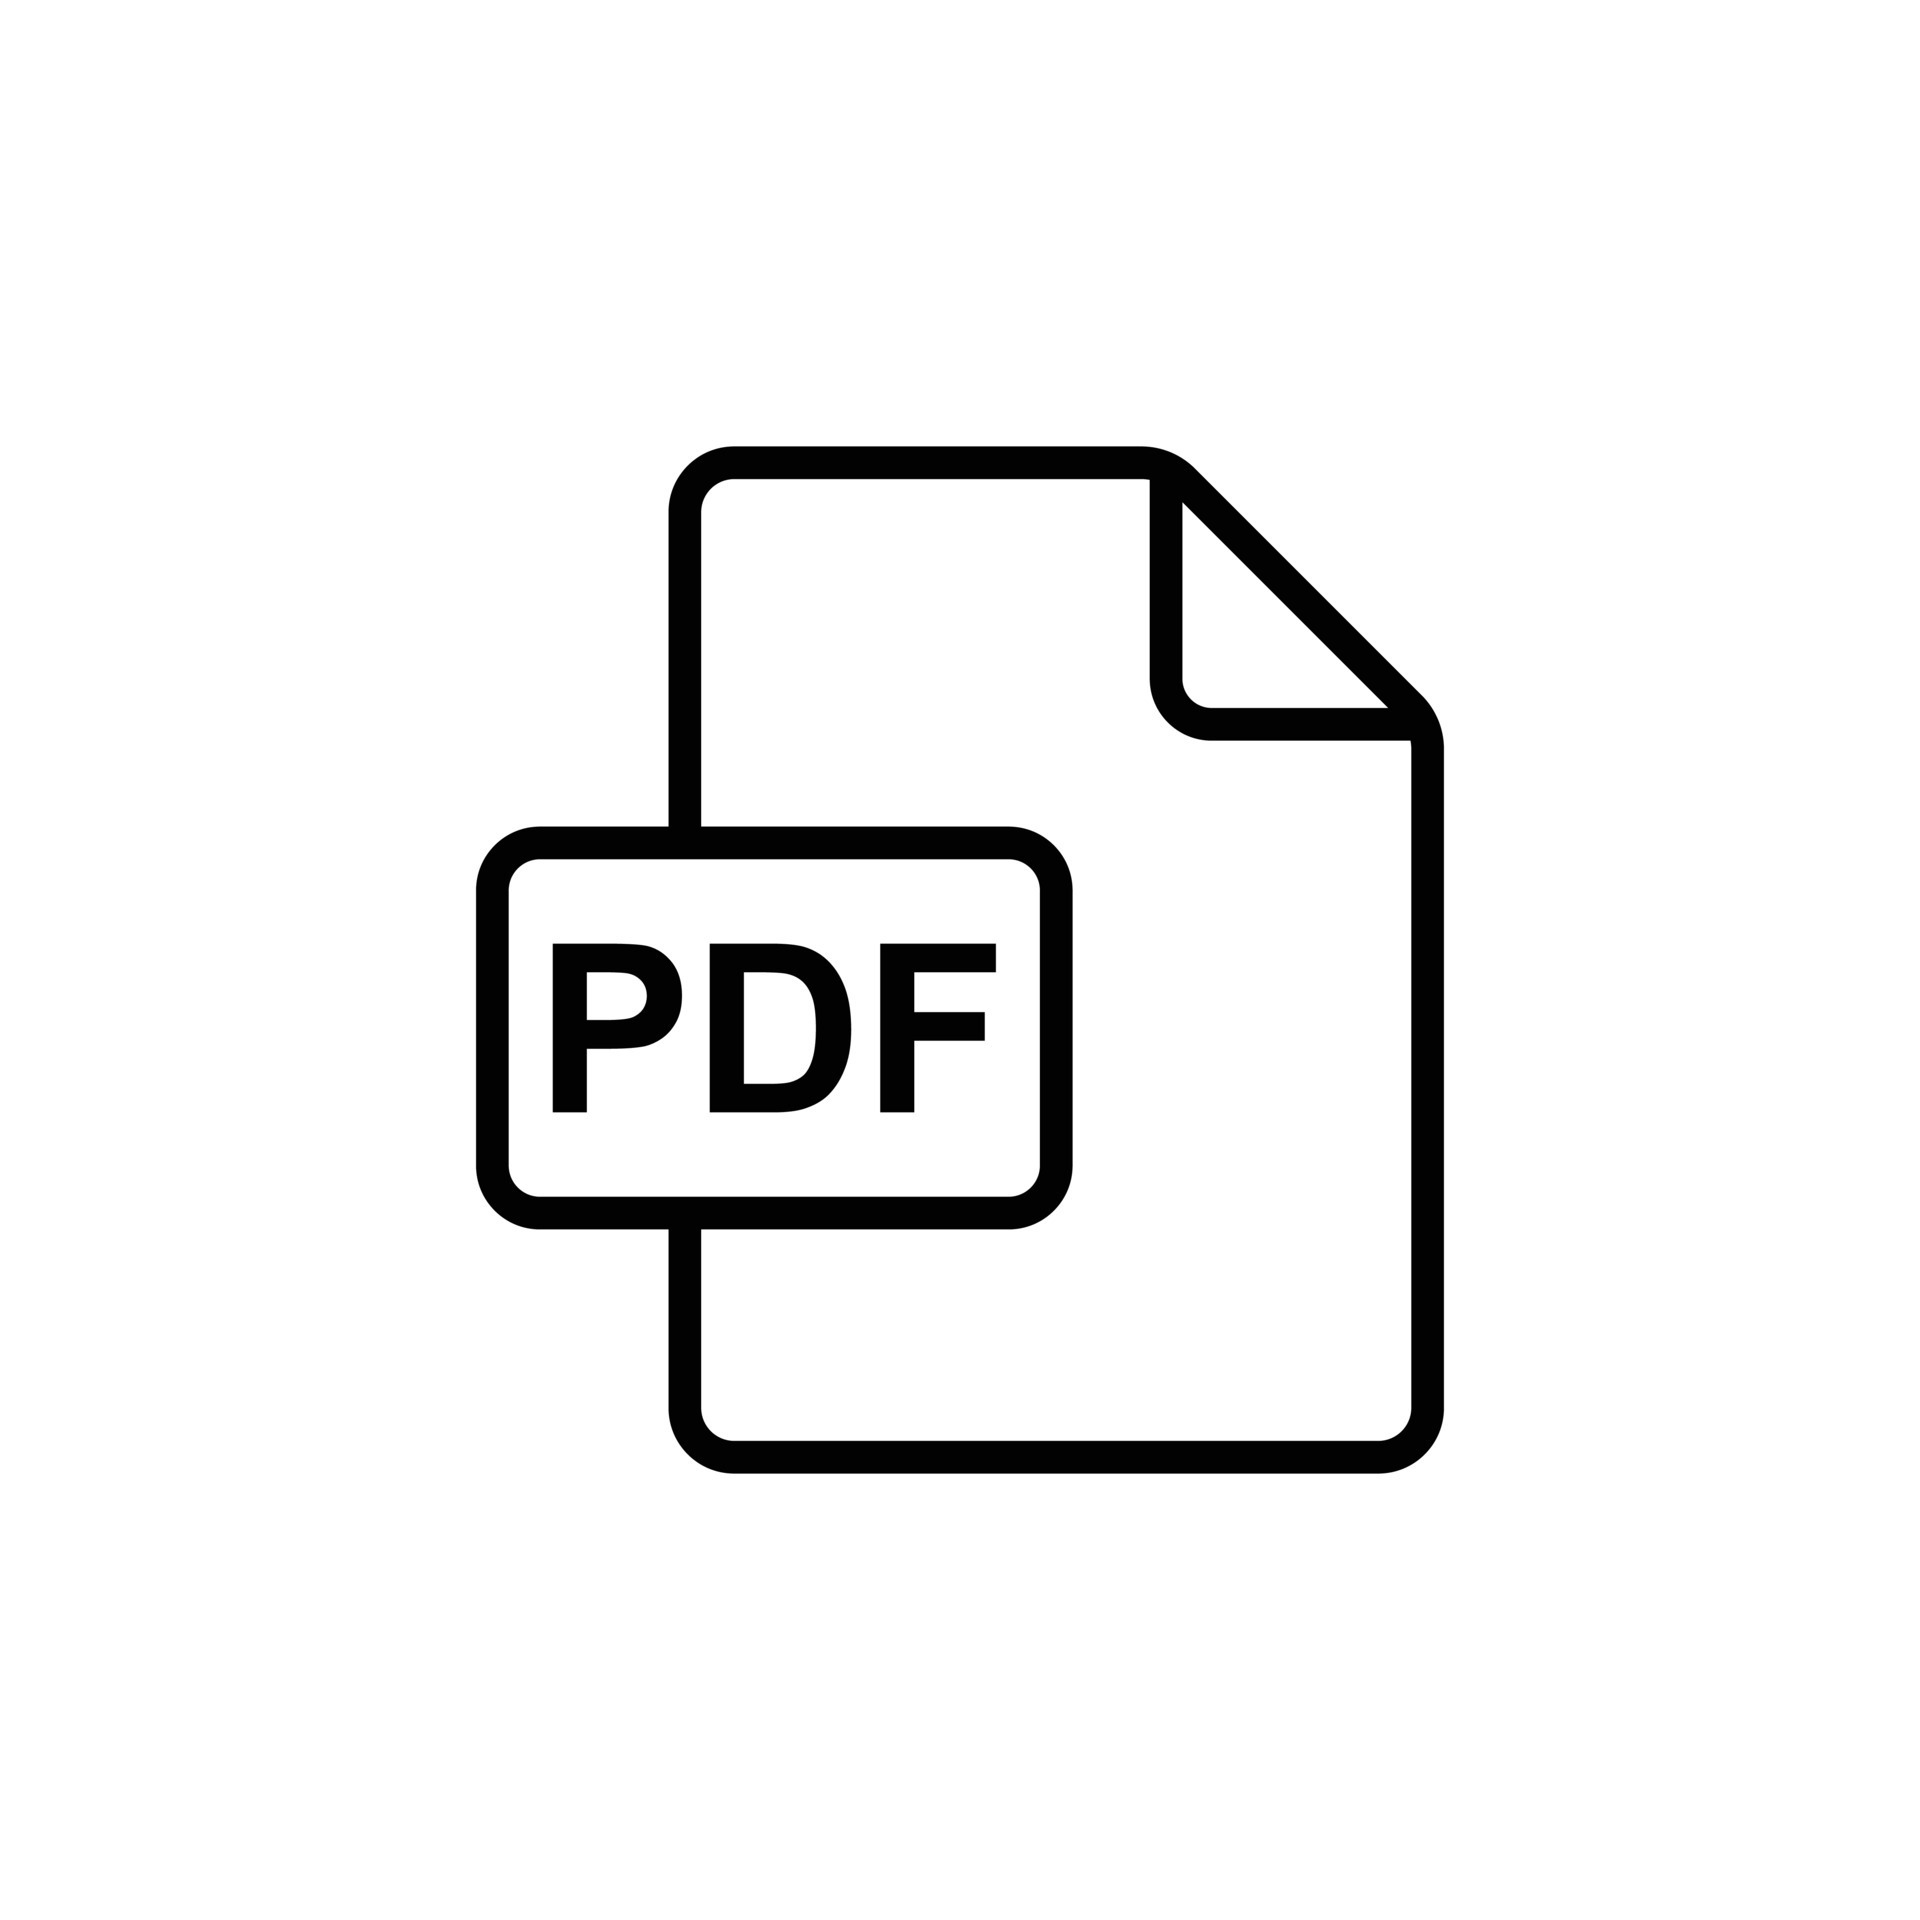 Tải xuống những tài liệu quan trọng dưới định dạng PDF đã trở nên dễ dàng hơn với biểu tượng tải xuống tài liệu PDF. Hãy khám phá thêm về biểu tượng này thông qua hình ảnh liên quan.